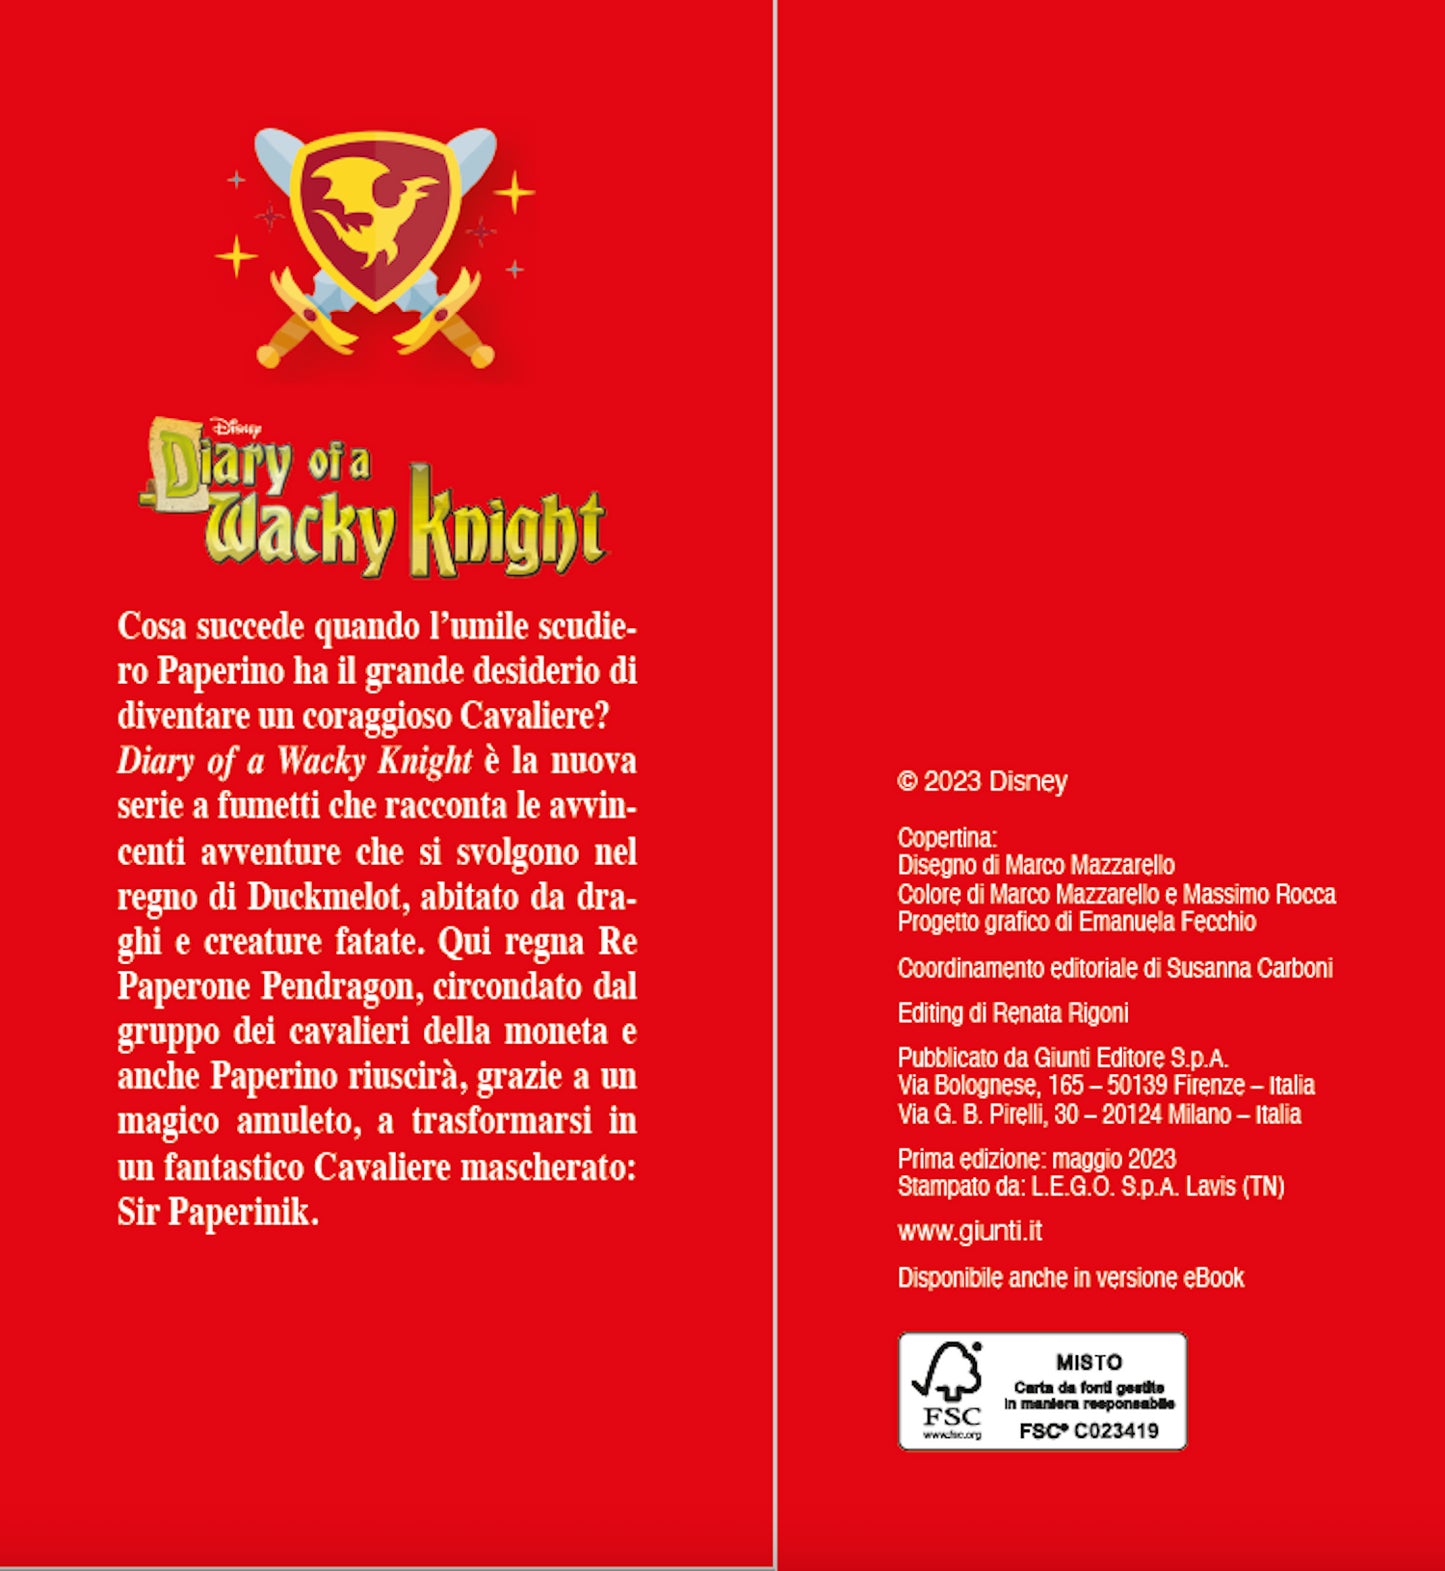 Diary of a Wacky Knight. Paperino e i Racconti del Cavaliere Mascherato